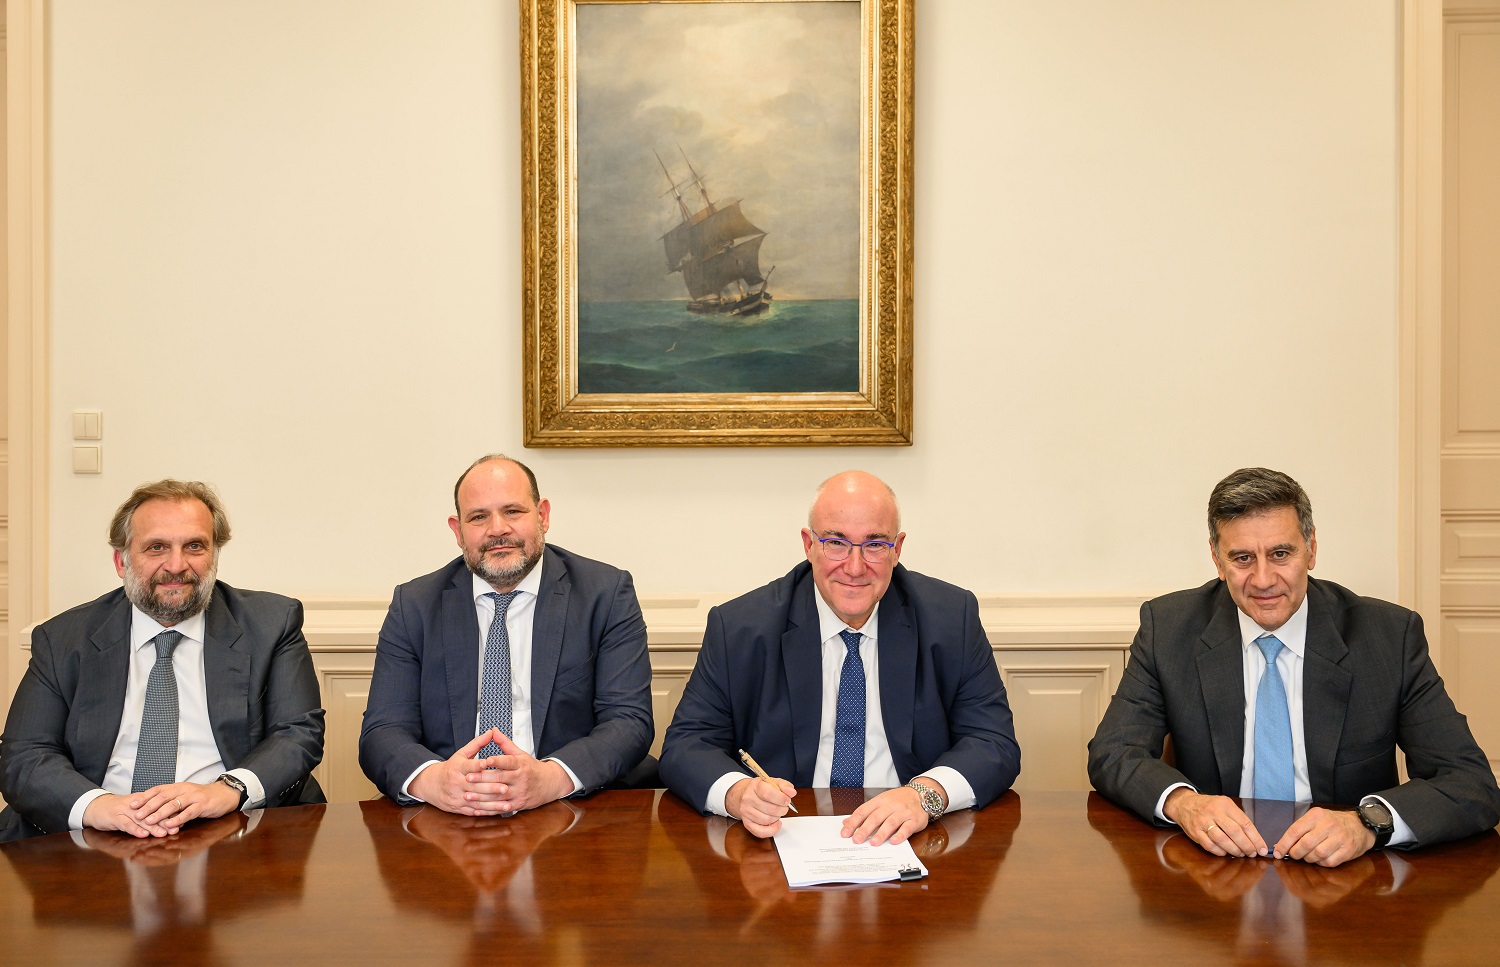 Οι κ.κ. Ζαγοραίος, Μαντζούφας, Αναγνωστόπουλος και Εμίρης τη στιγμή της υπογραφής.